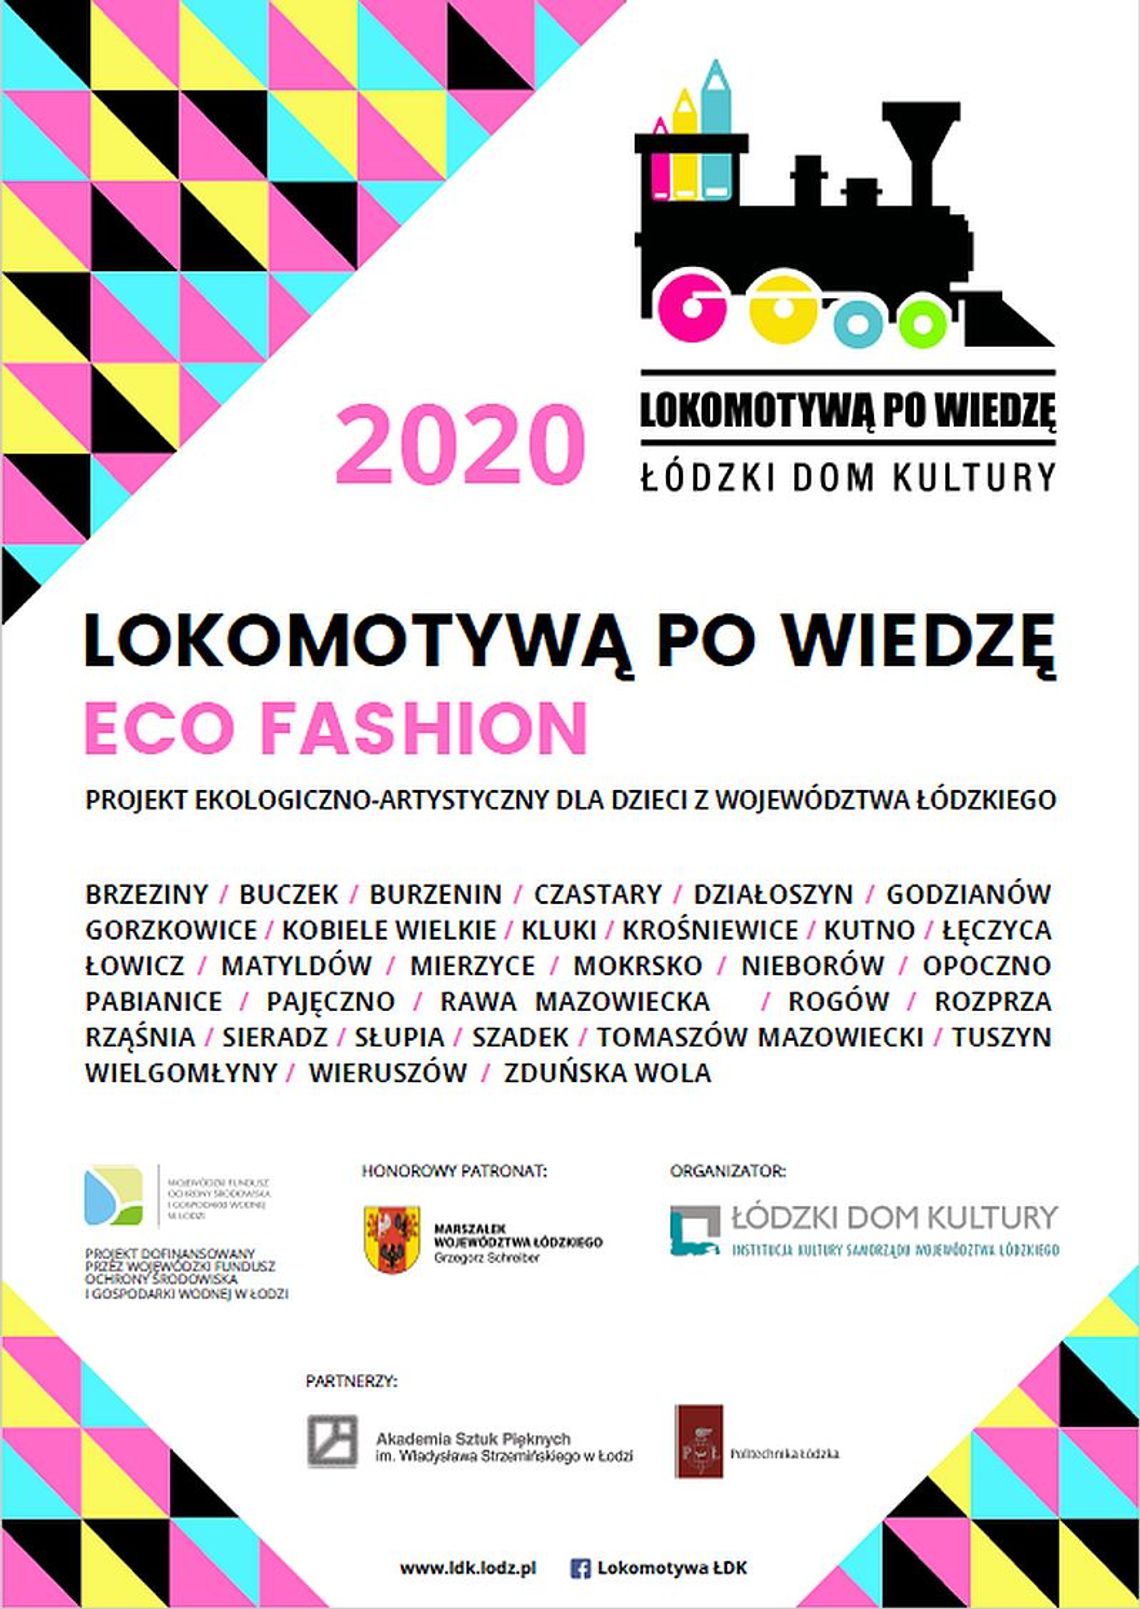 Zaproszenie do udziału w projekcie ekologiczno-artystycznym "Lokomotywą po wiedzę - eco fashion" dla dzieci w wieku 7 - 14 lat